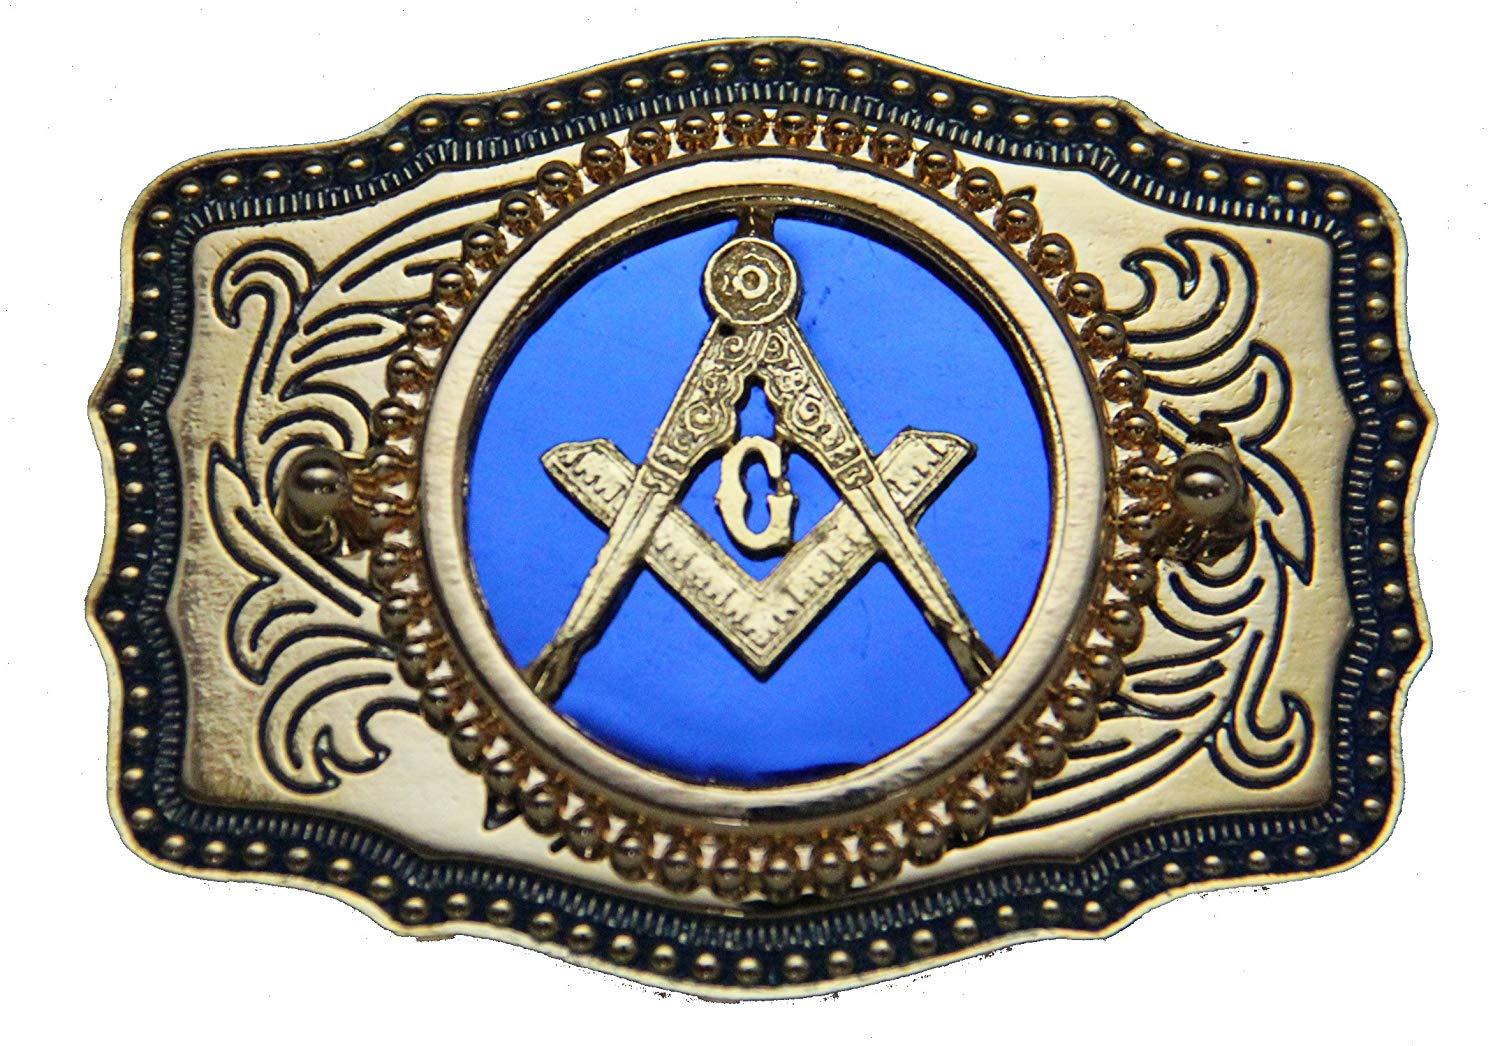 USA Red White Blue Square Logo - Amazon.com: Genuine Texas Brand Blue Square and Compasses Masonic ...